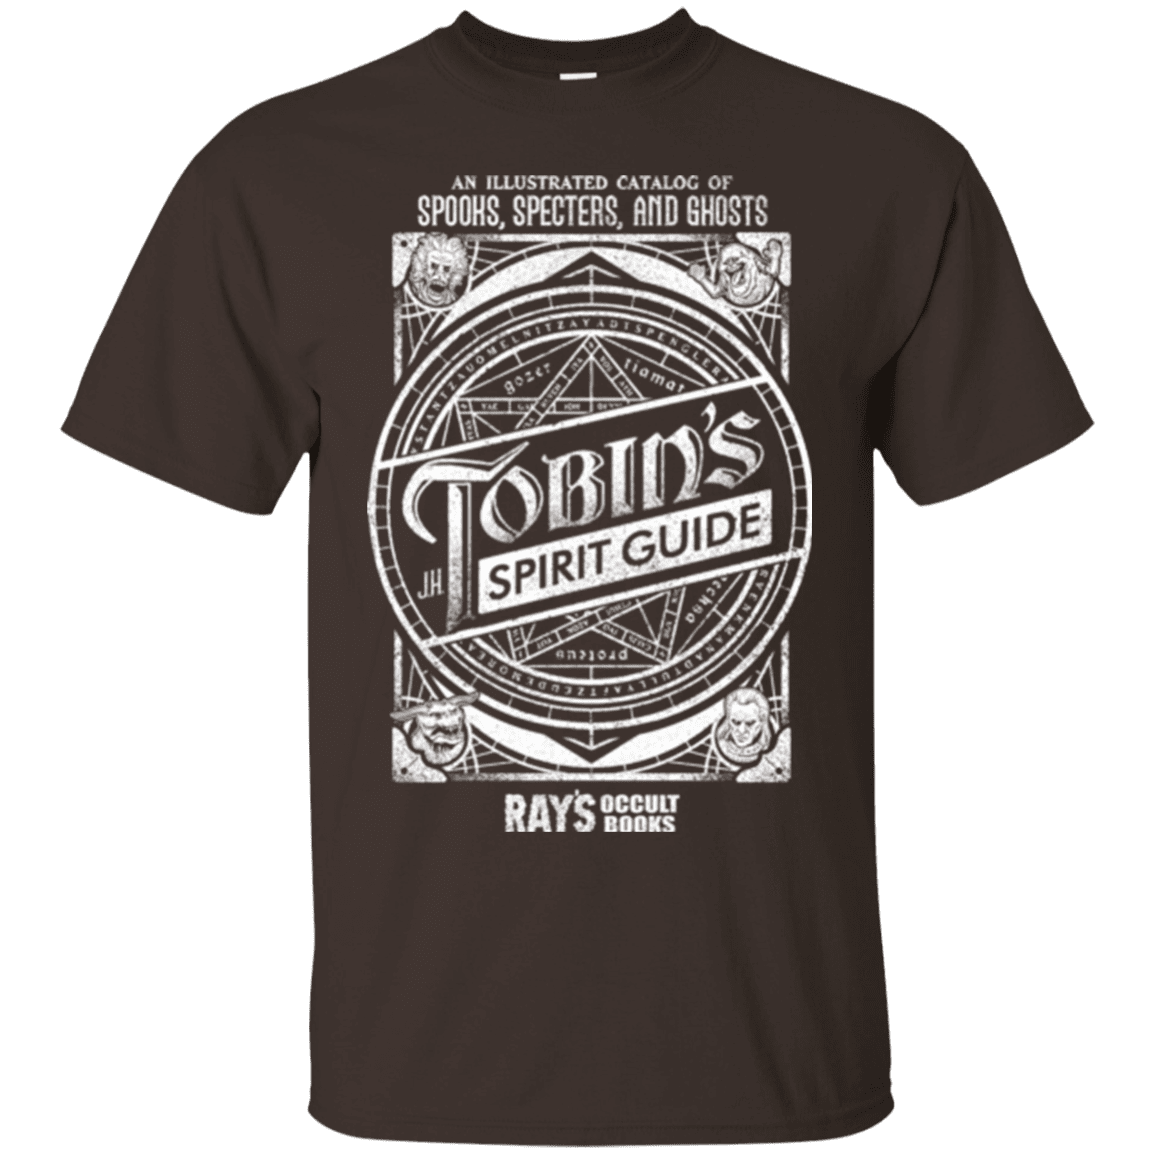 T-Shirts Dark Chocolate / Small Tobin's Spirit Guide T-Shirt